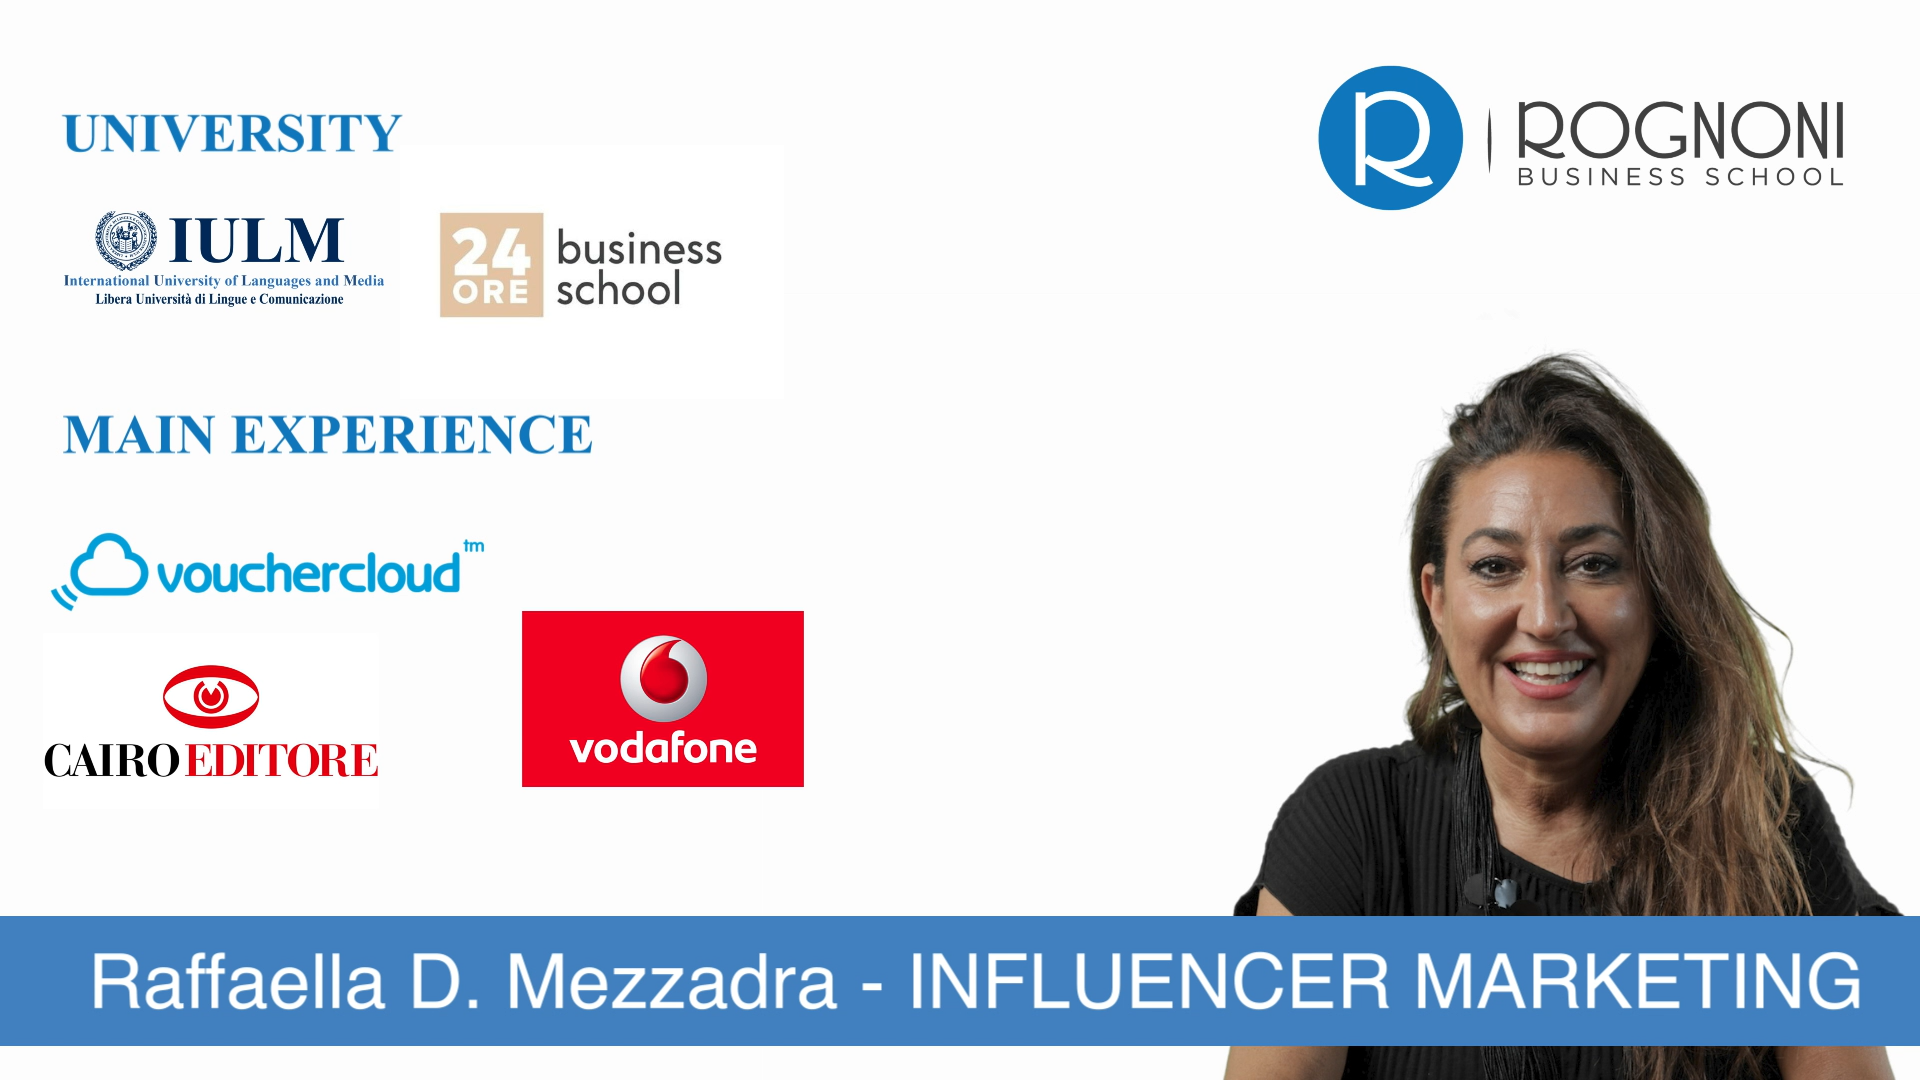 RAFFAELLA D. MEZZADRA è responsabile dell'area DIGITAL<br />
<br />
È laureata in relazioni pubbliche presso l'università IULM. Ha inoltre un Master in Sales & Marketing<br />
<br />
Da oltre dieci anni ricopre ruoli manageriali nel Digital Marketing e Influencer Marketing in aziende multinazionali